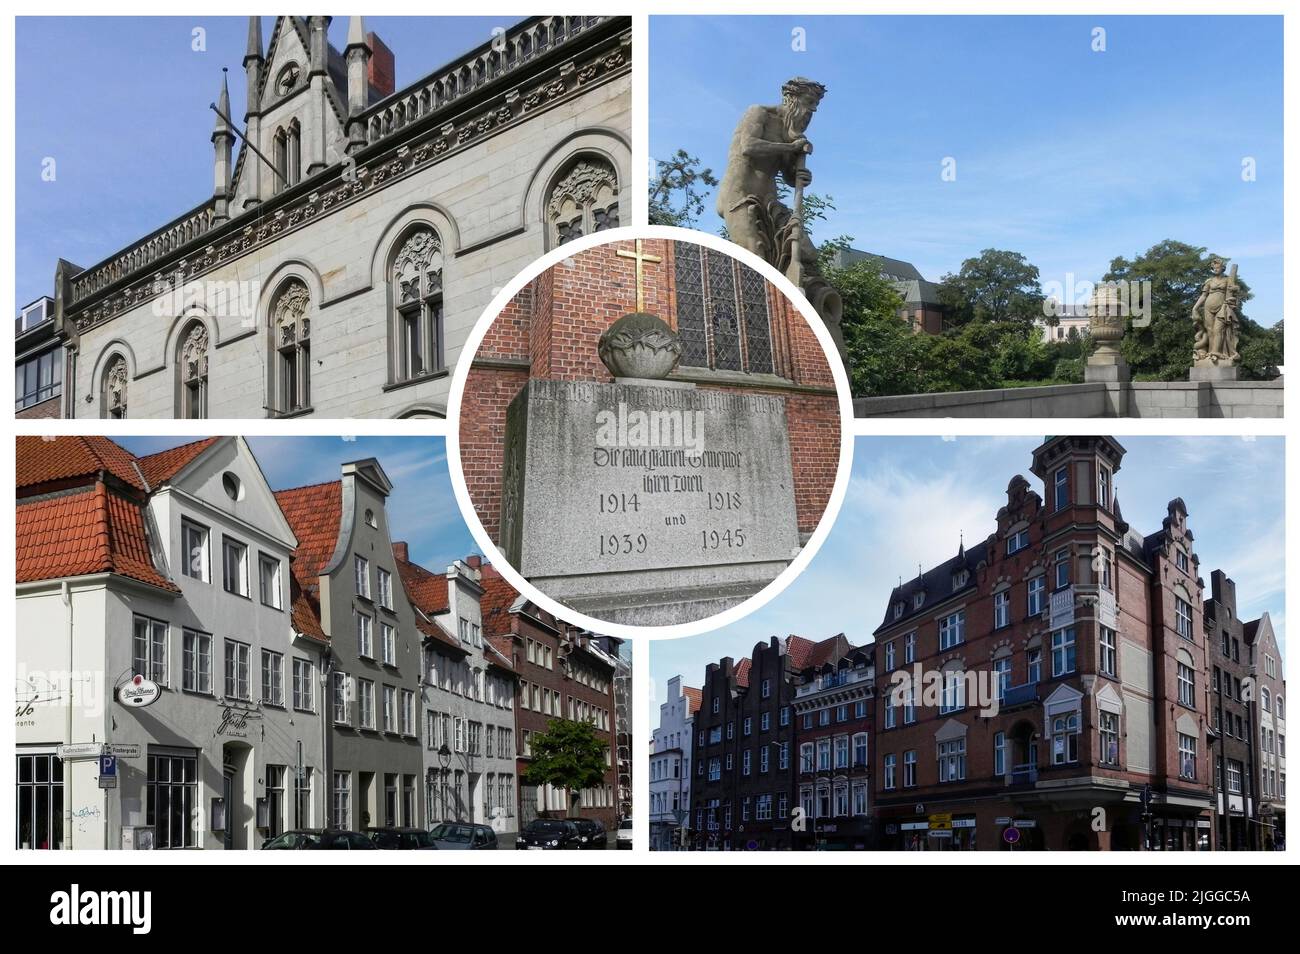 Lübeck est une ville allemande d'architecture gothique Baltique datant de l'époque où elle était la capitale médiévale de la Ligue hanséatique Banque D'Images